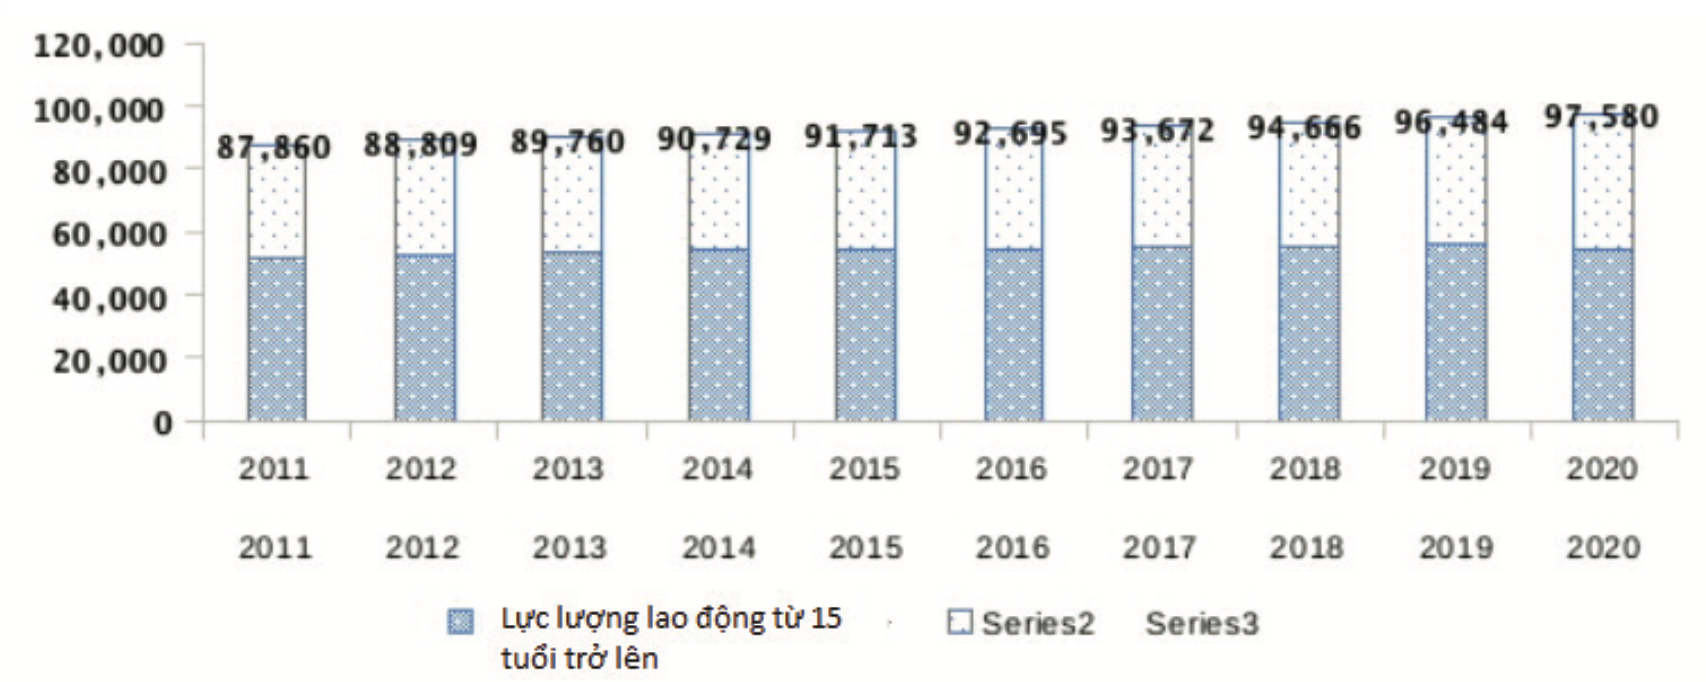 Phát triển nguồn nhân lực trong xây dựng kinh tế số ở Việt Nam - Ảnh 1.